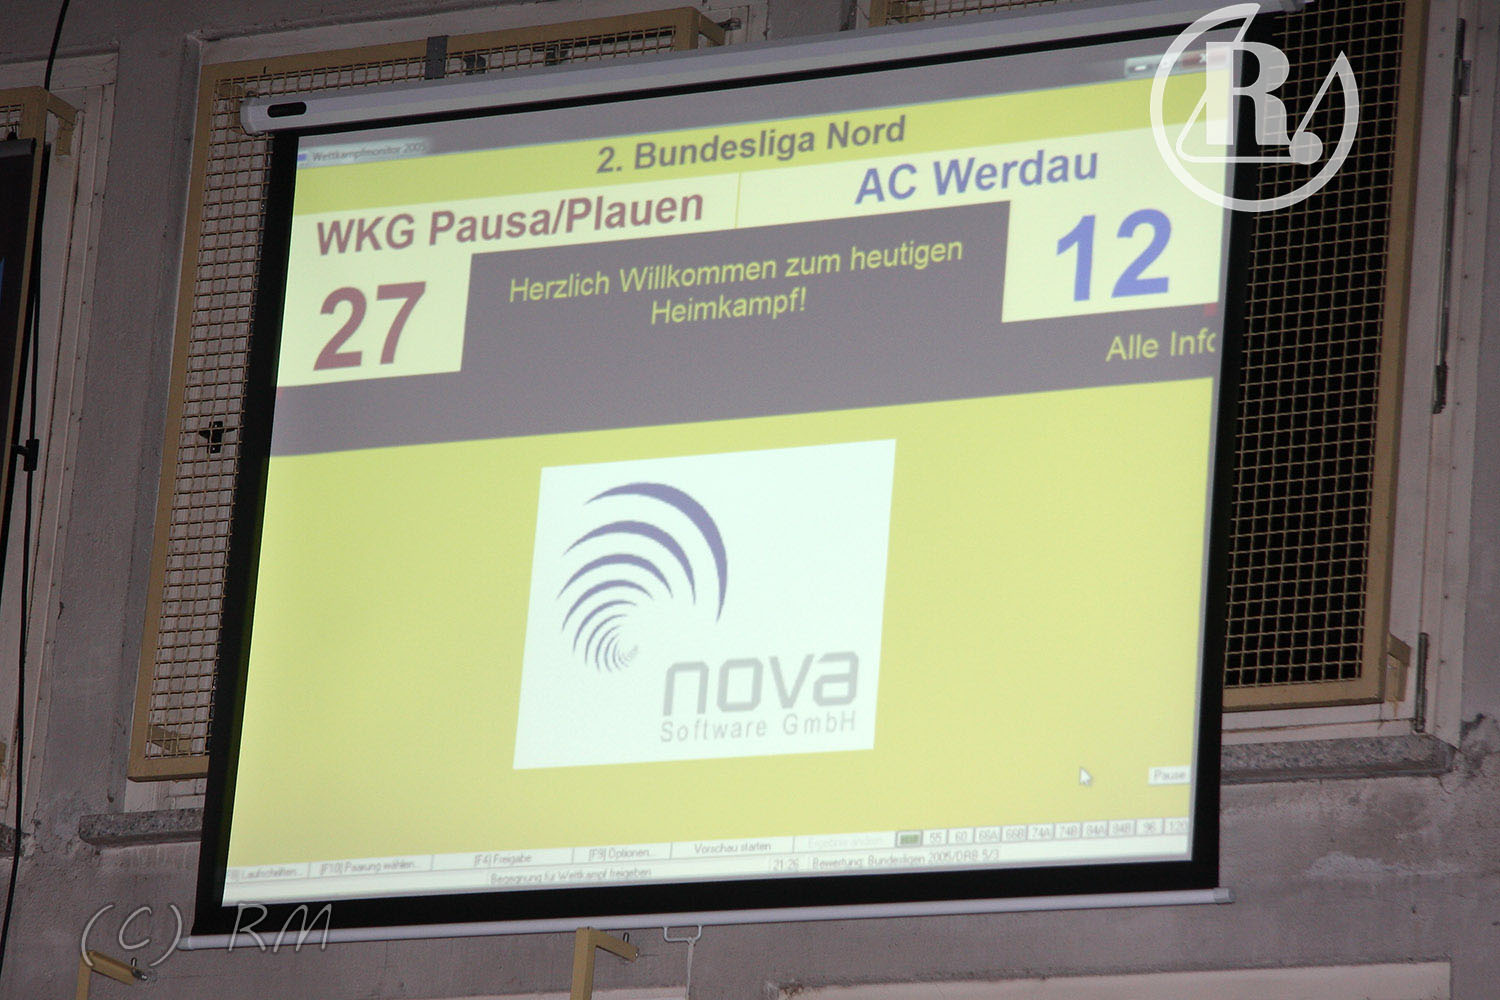 2.Bundesliga Nord: WKG Pausa/Plauen gegen AC Werdau 27:12